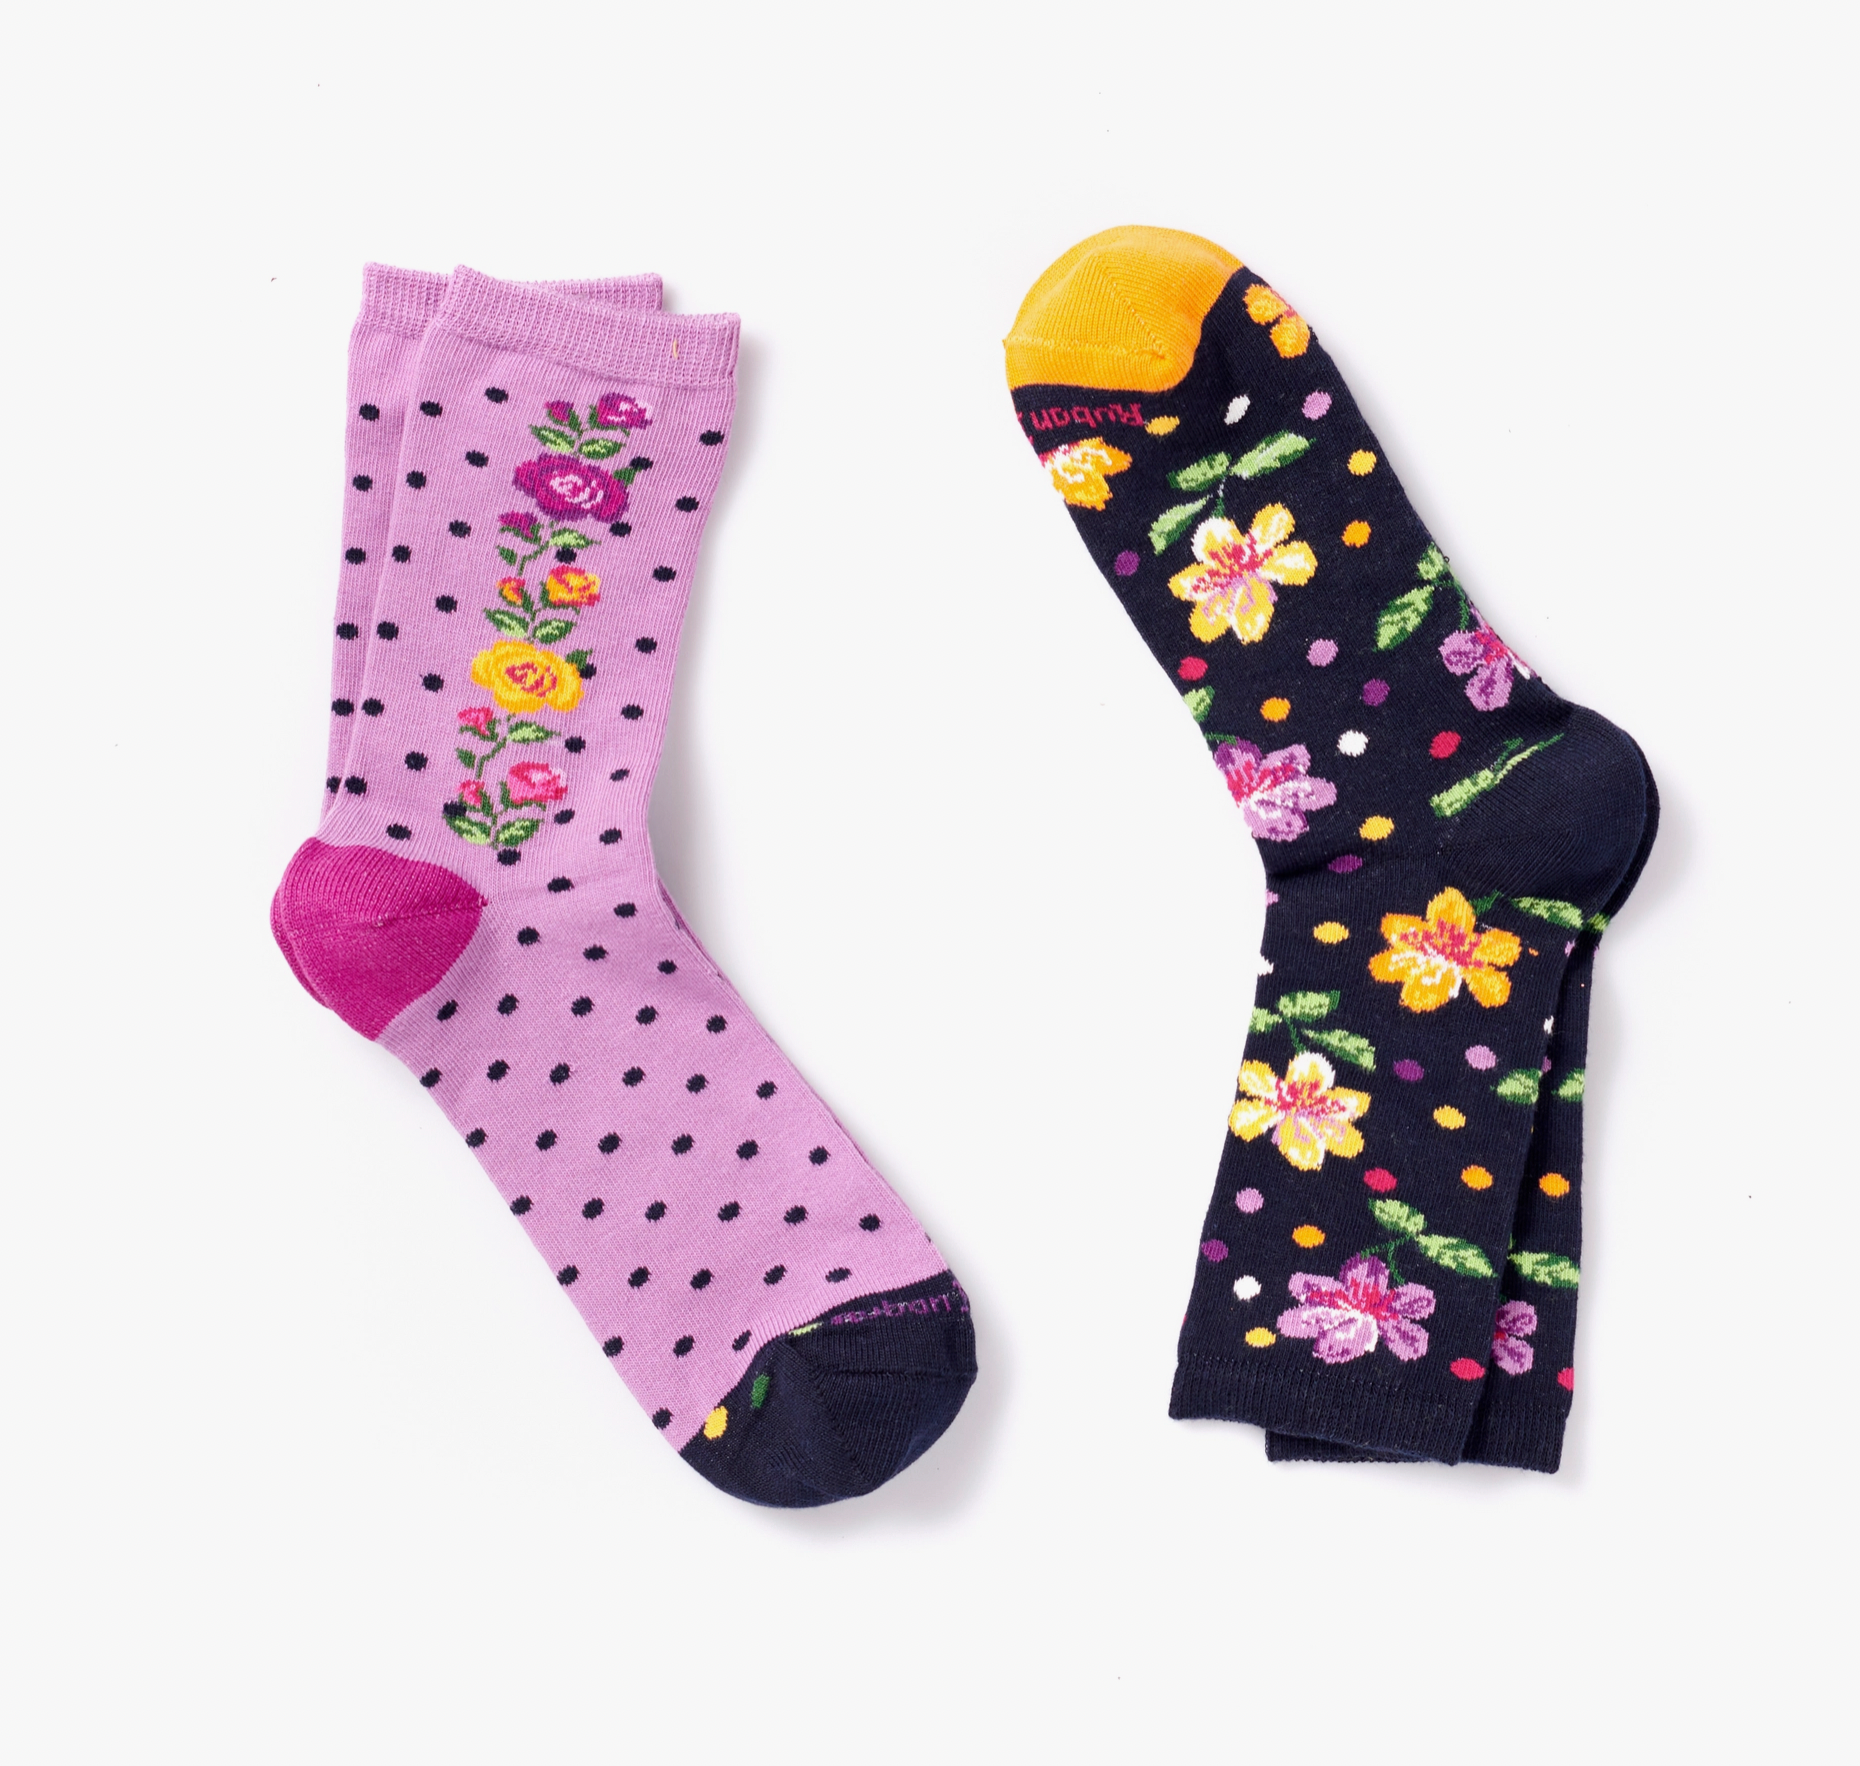 Flowers Women's Crew Socks - 2 Pair Gift Set